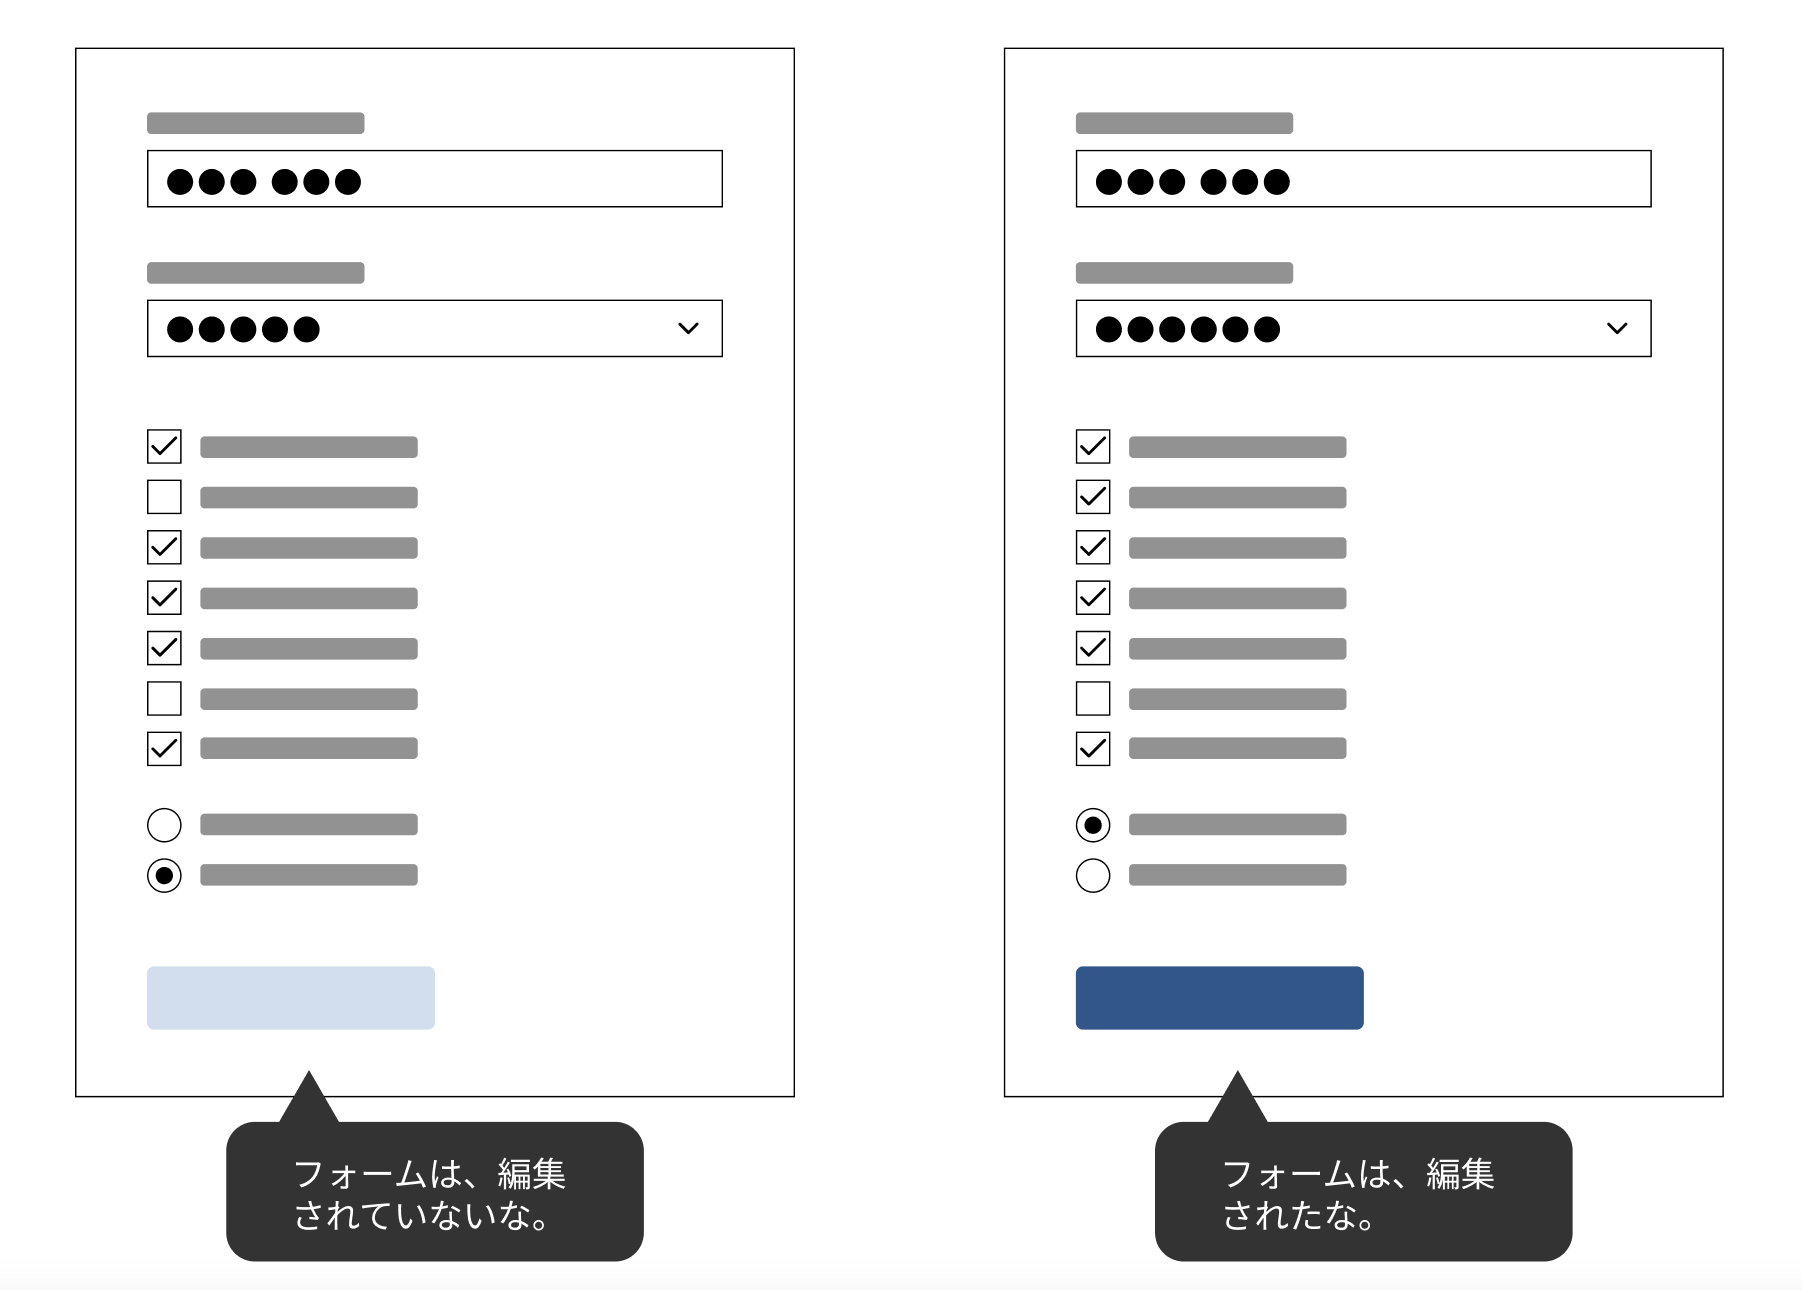 ウェブアプリケーションの設定画面のイメージ。左 : 編集前でサブミットボタンが無効になっている状態。右 : 編集後でサブミットボタンが有効になっている状態。